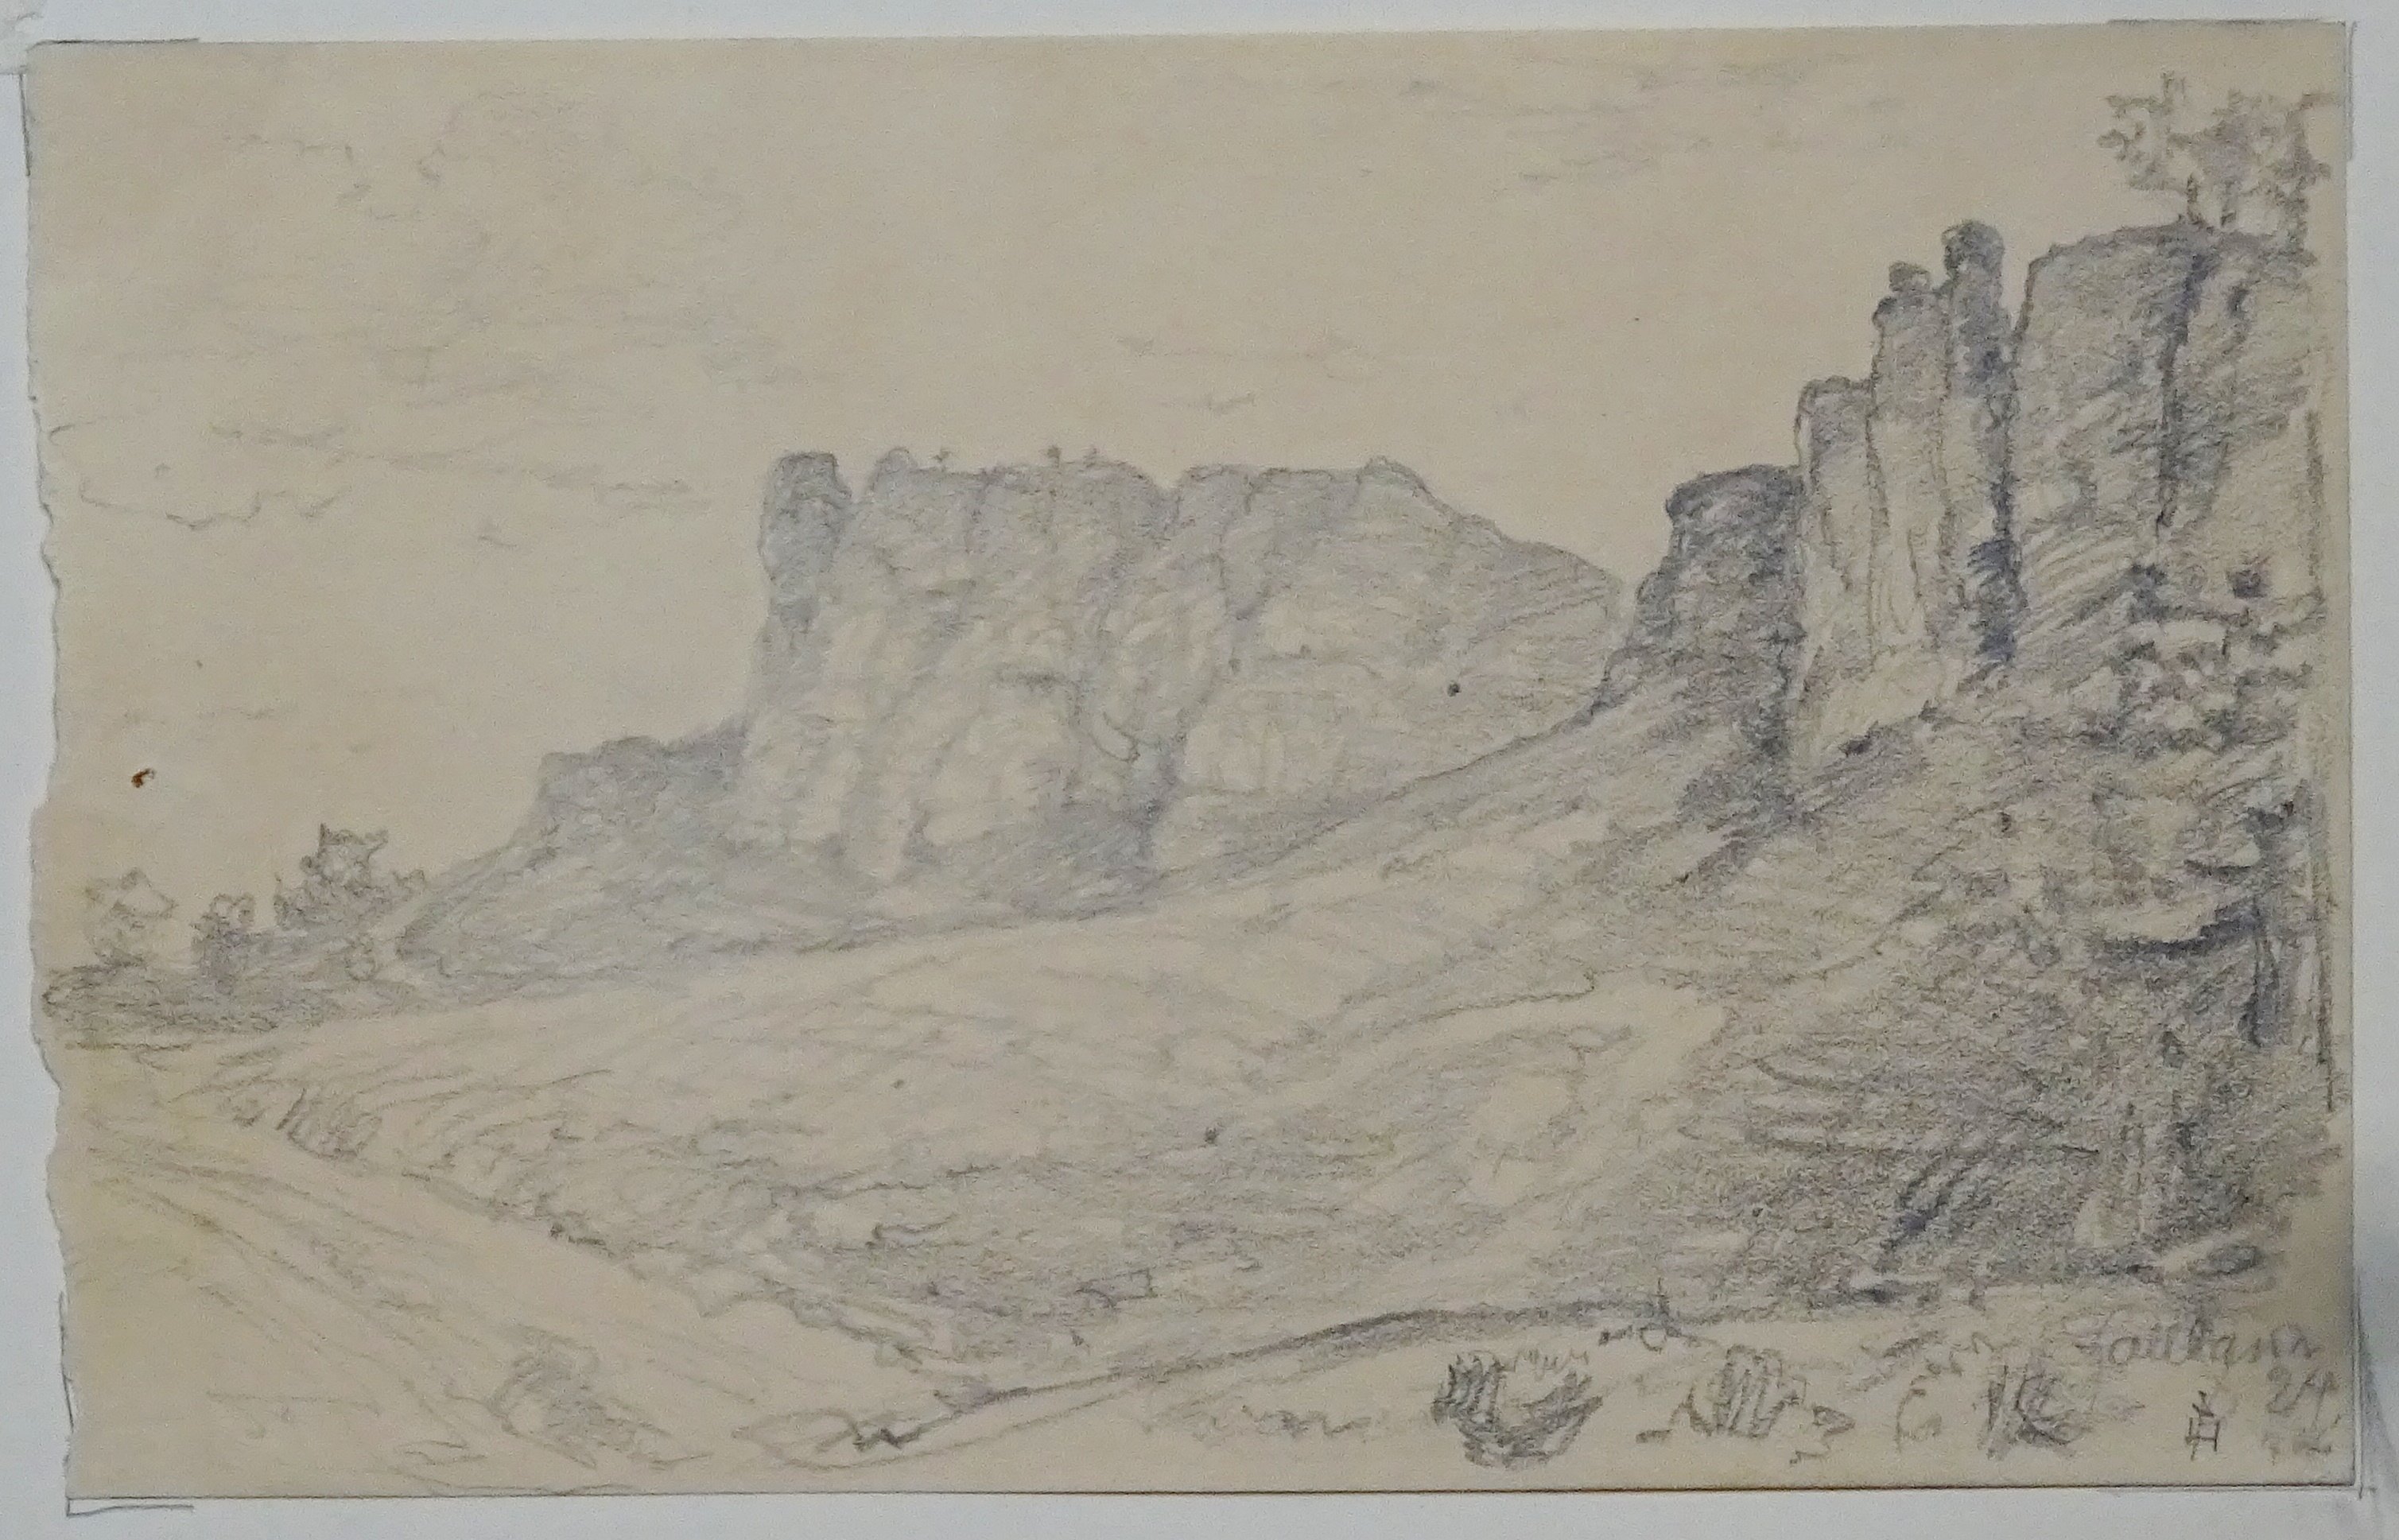 Regenstein: Felsen des Regenstein aus der Ferne, Zeichnung von Christian Hallbauer, 1924 (Schloß Wernigerode GmbH RR-F)